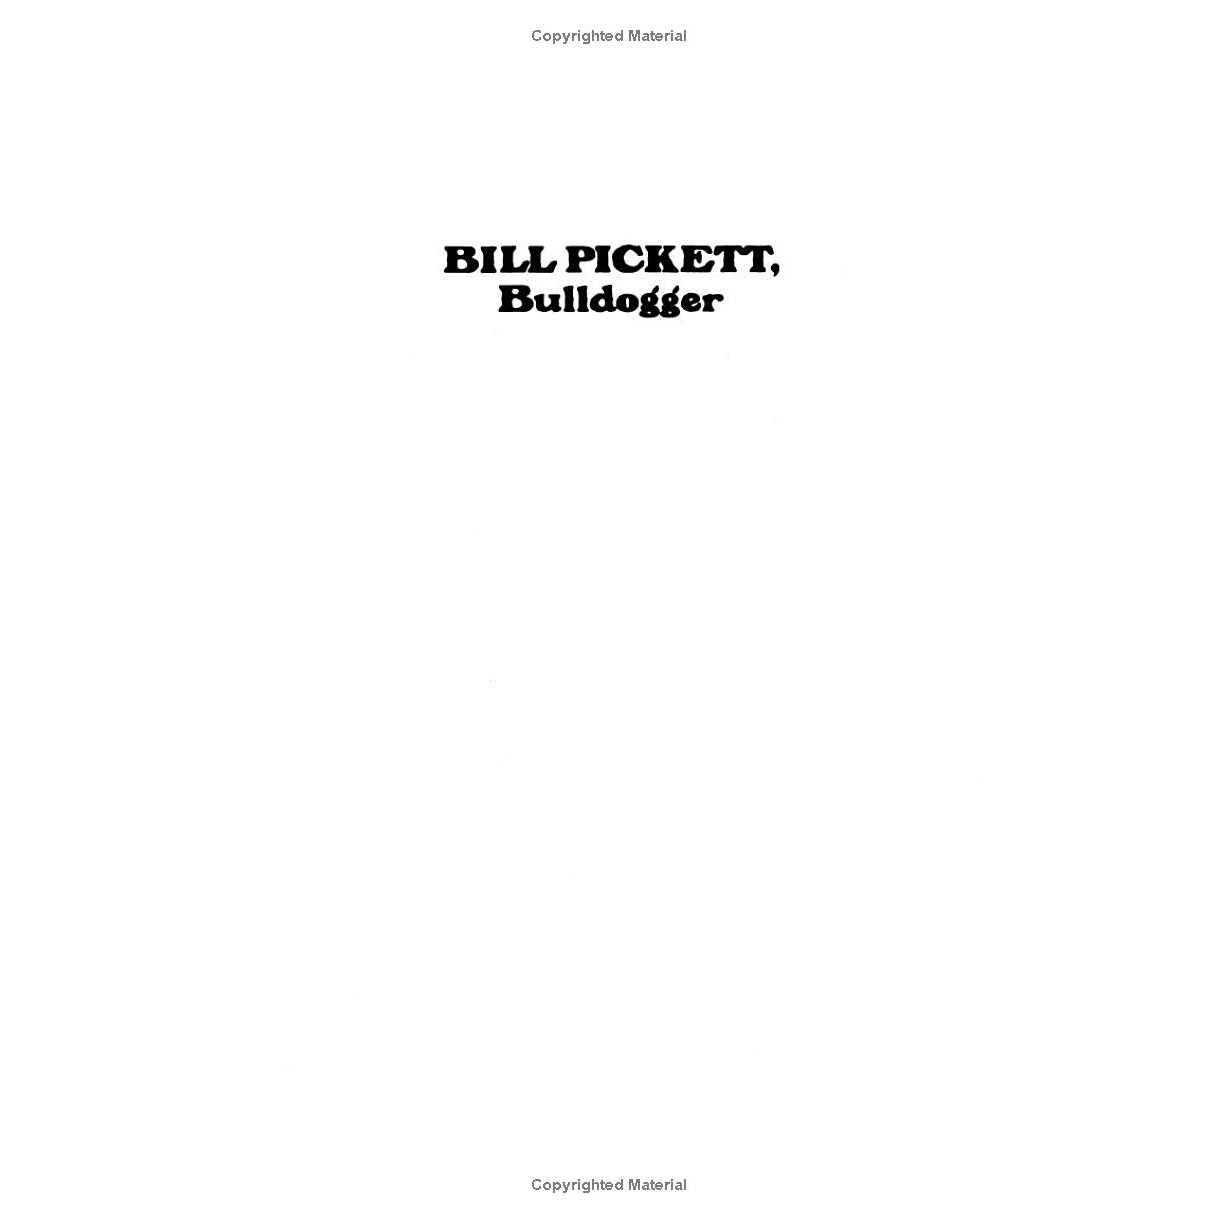 Bill Pickett: Bulldogger by Bailey C. Hanes